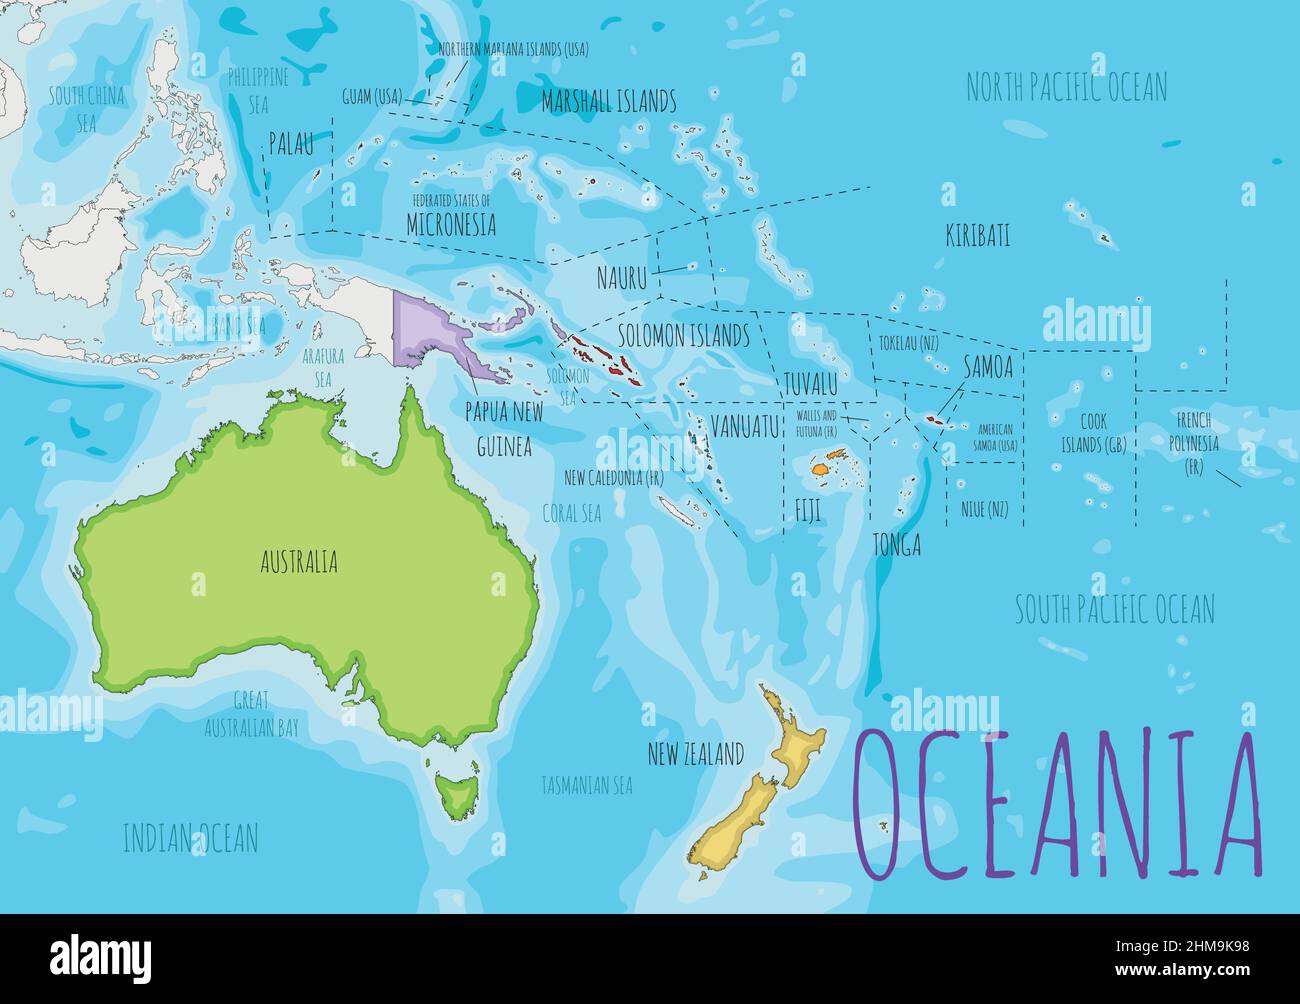 Politische Ozeanien Kartendarstellung mit verschiedenen Farben für jedes Land. Editierbare und klar beschriftete Ebenen. Stock Vektor